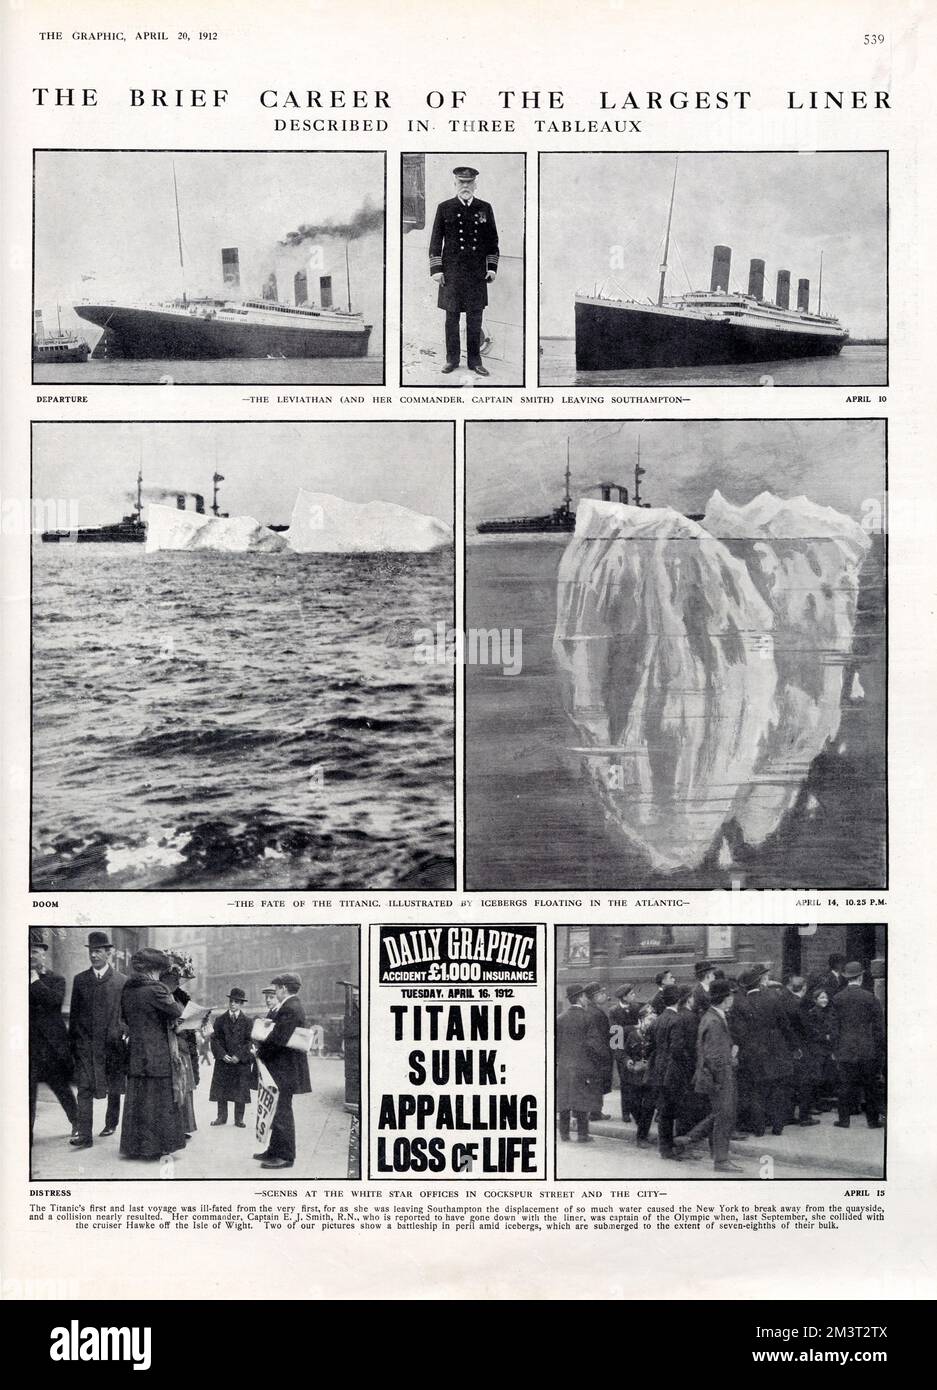 La brève carrière du plus grand paquebot, décrite dans trois tableaux. Départ du Titanic de Southampton le 10th avril 1912; Doom - le sort du Titanic illustré par les icebergs flottant dans l'Atlantique le 14th avril; Distress - scènes dans les bureaux du White Star de Cockspur Street et de la ville. Banque D'Images